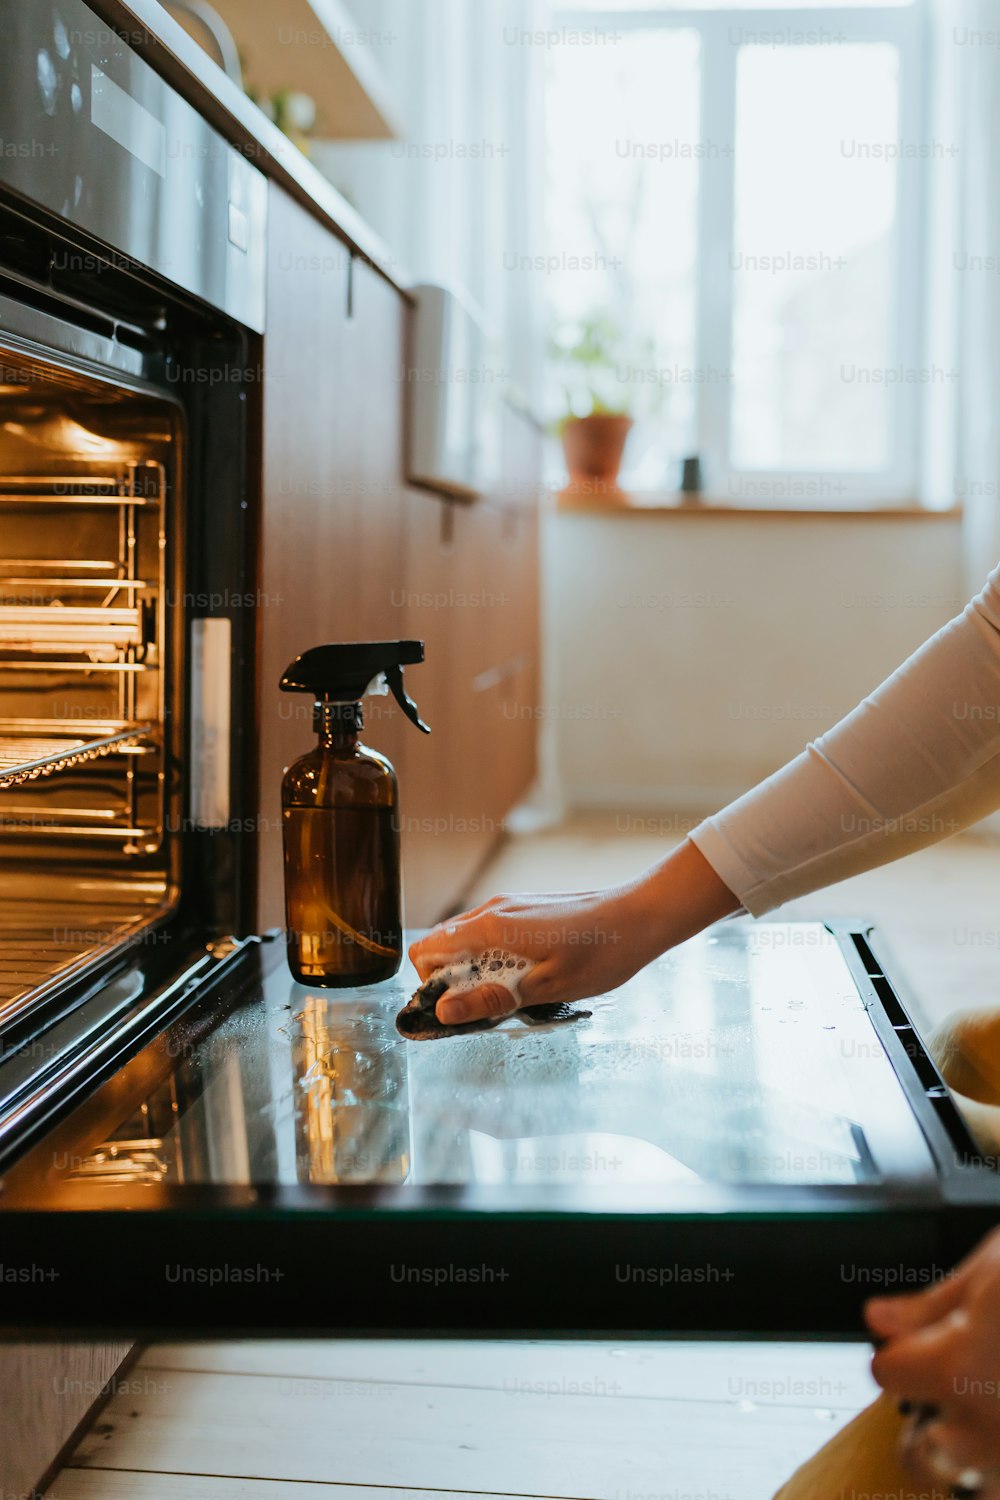 Una donna sta pulendo il forno con un flacone spray